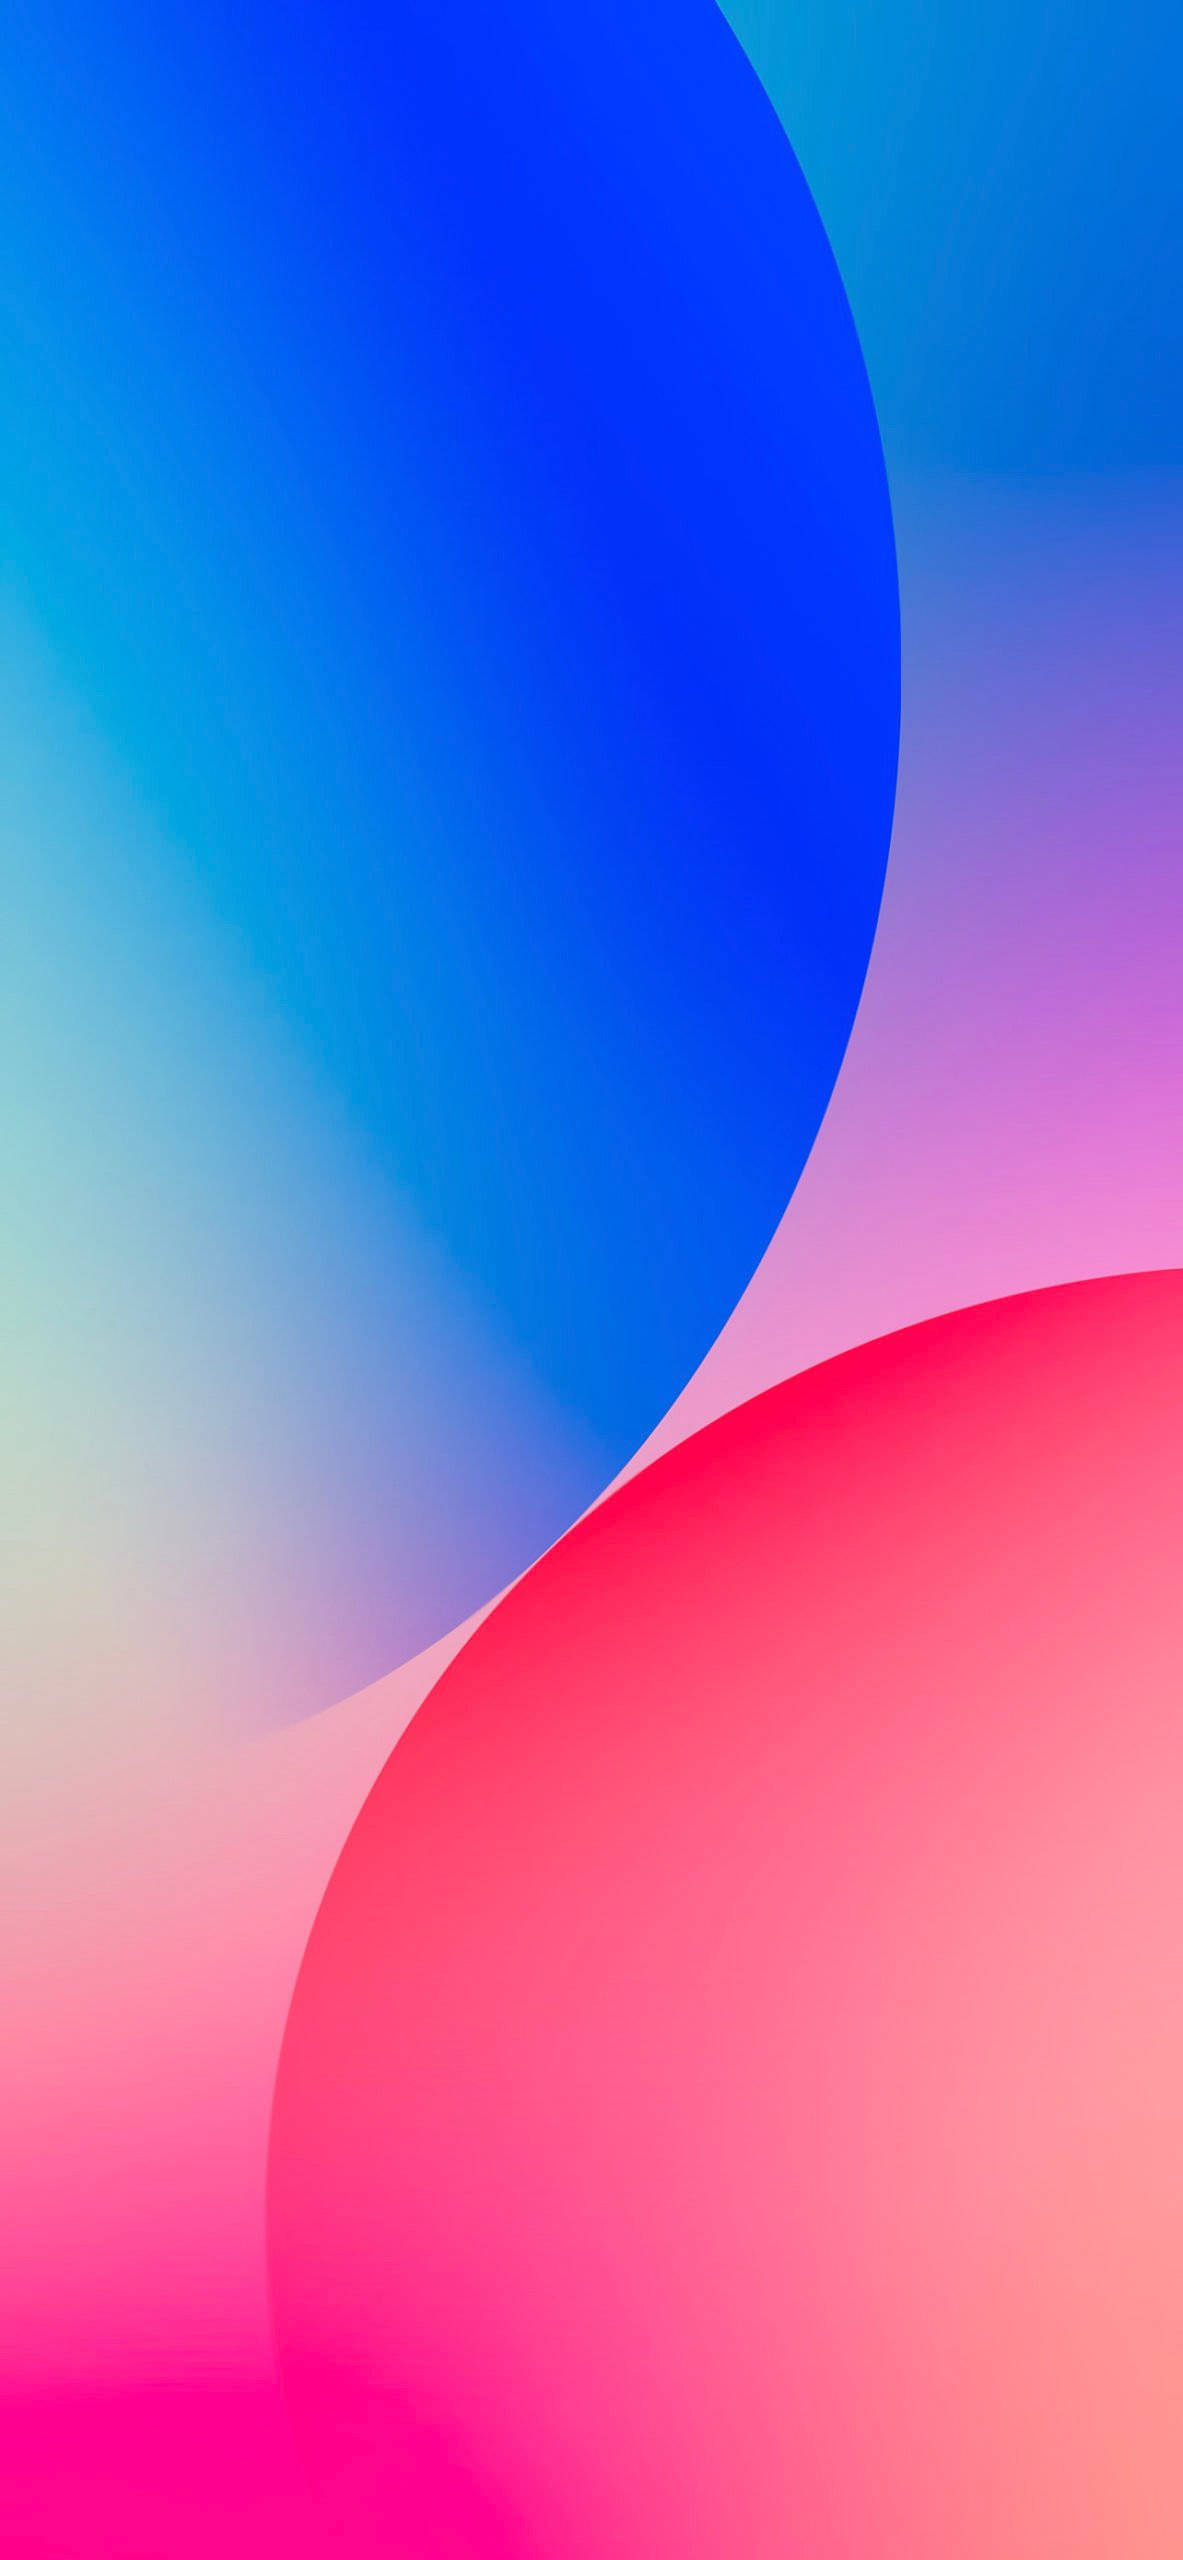 Bạn muốn một hình nền độc đáo cho điện thoại của mình? Hình nền iOS 16 với bong bóng màu xanh và đỏ chắc chắn sẽ khiến bạn nổi bật giữa đám đông! Hình ảnh tươi sáng và sôi động này sẽ làm cho màn hình của bạn trở nên sinh động và đầy sức sống. Xem ngay!